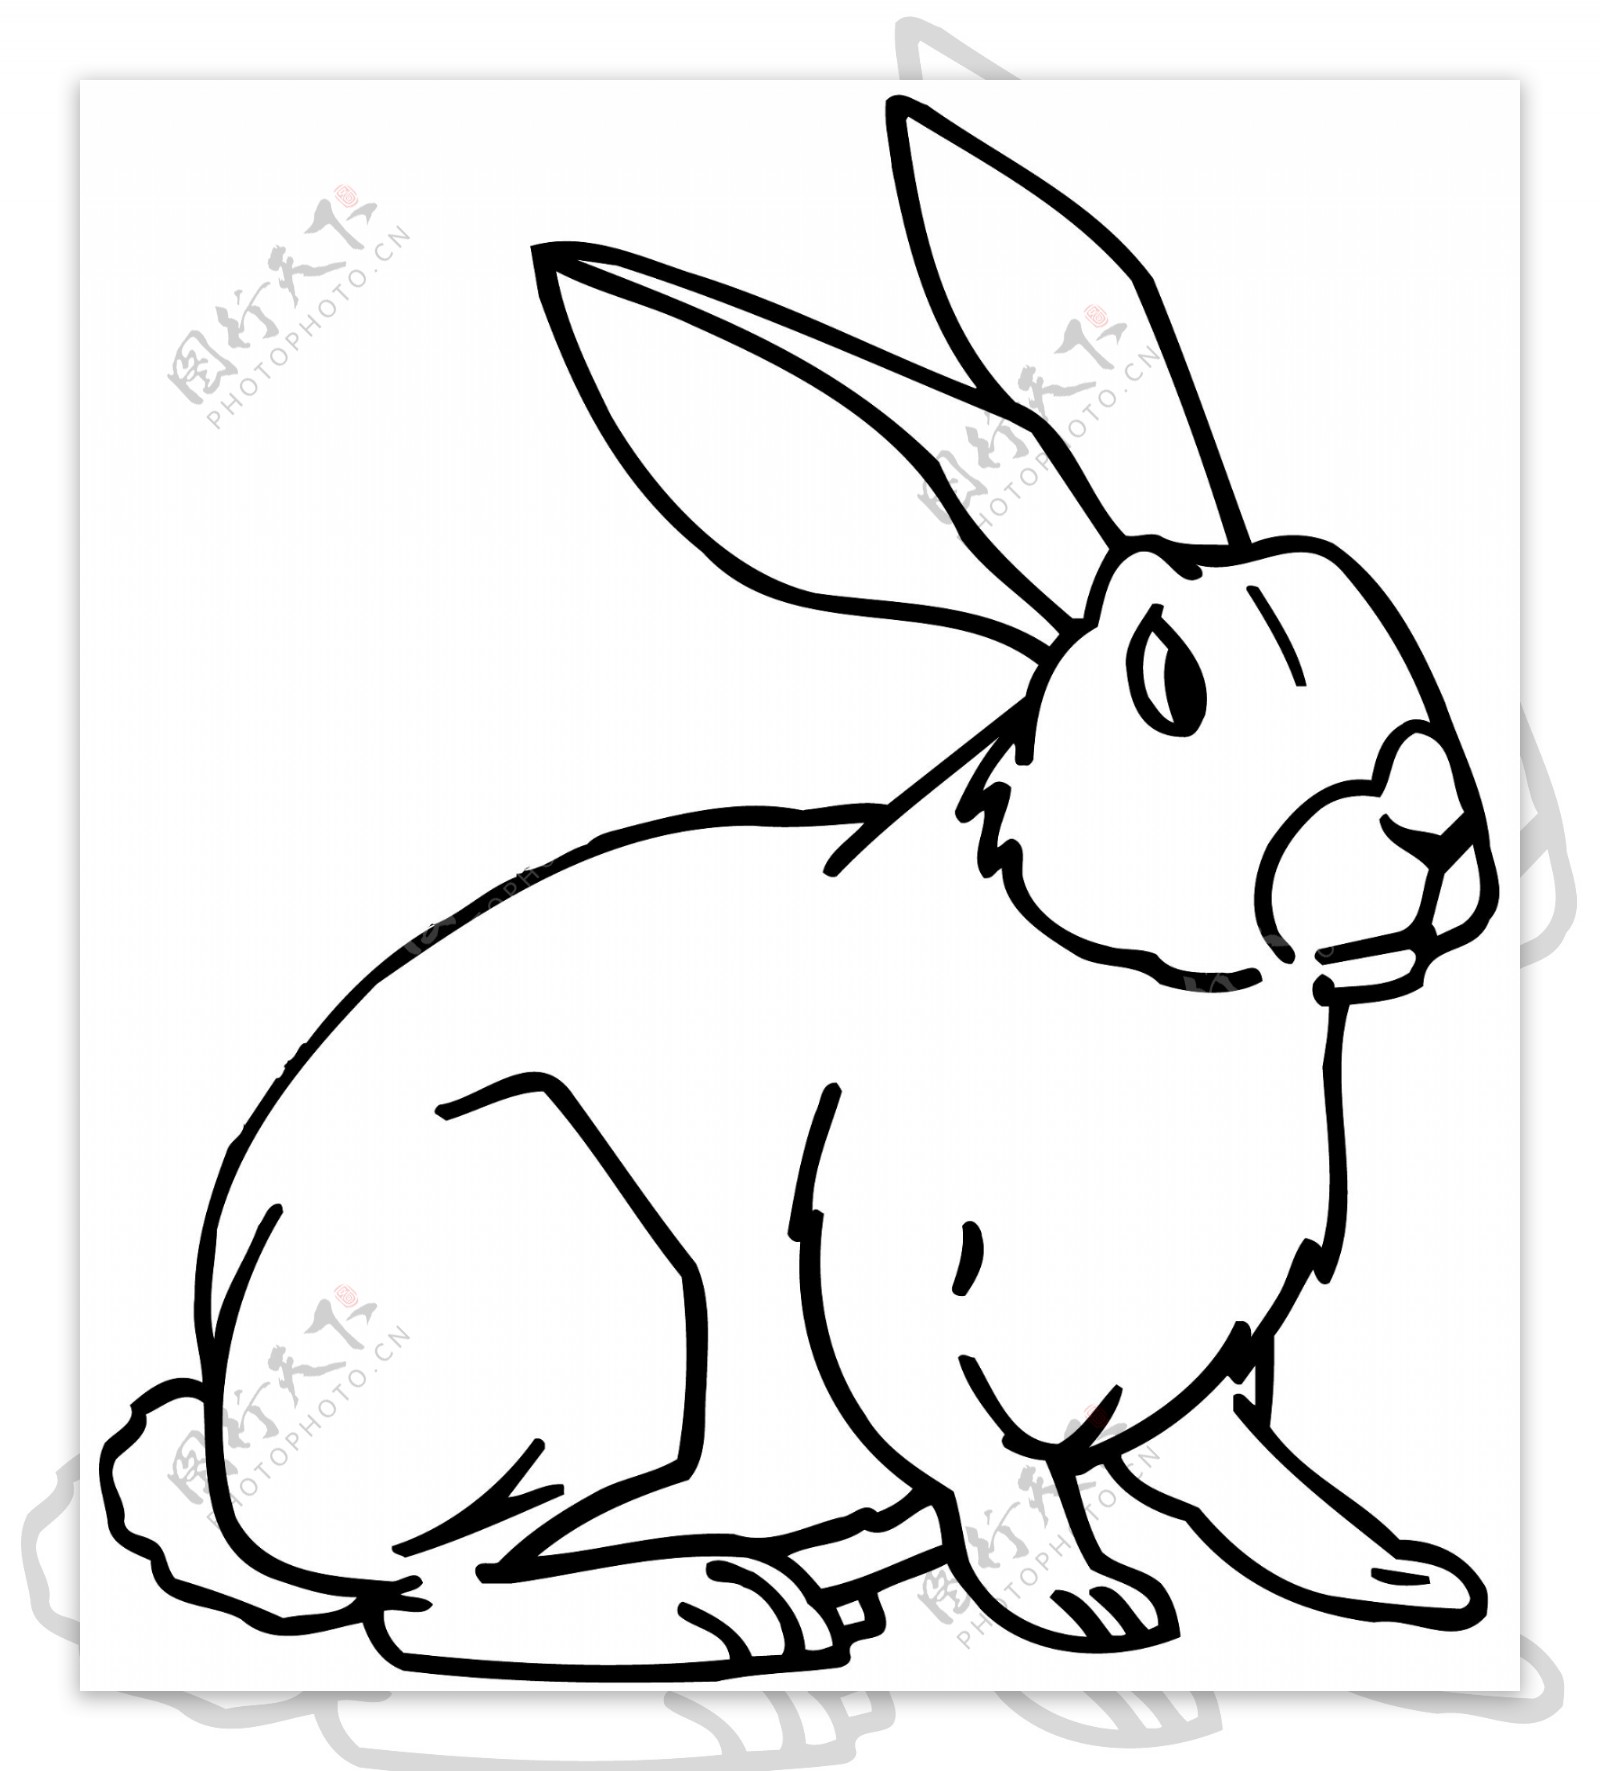 兔子常见动物矢量素材eps格式0011